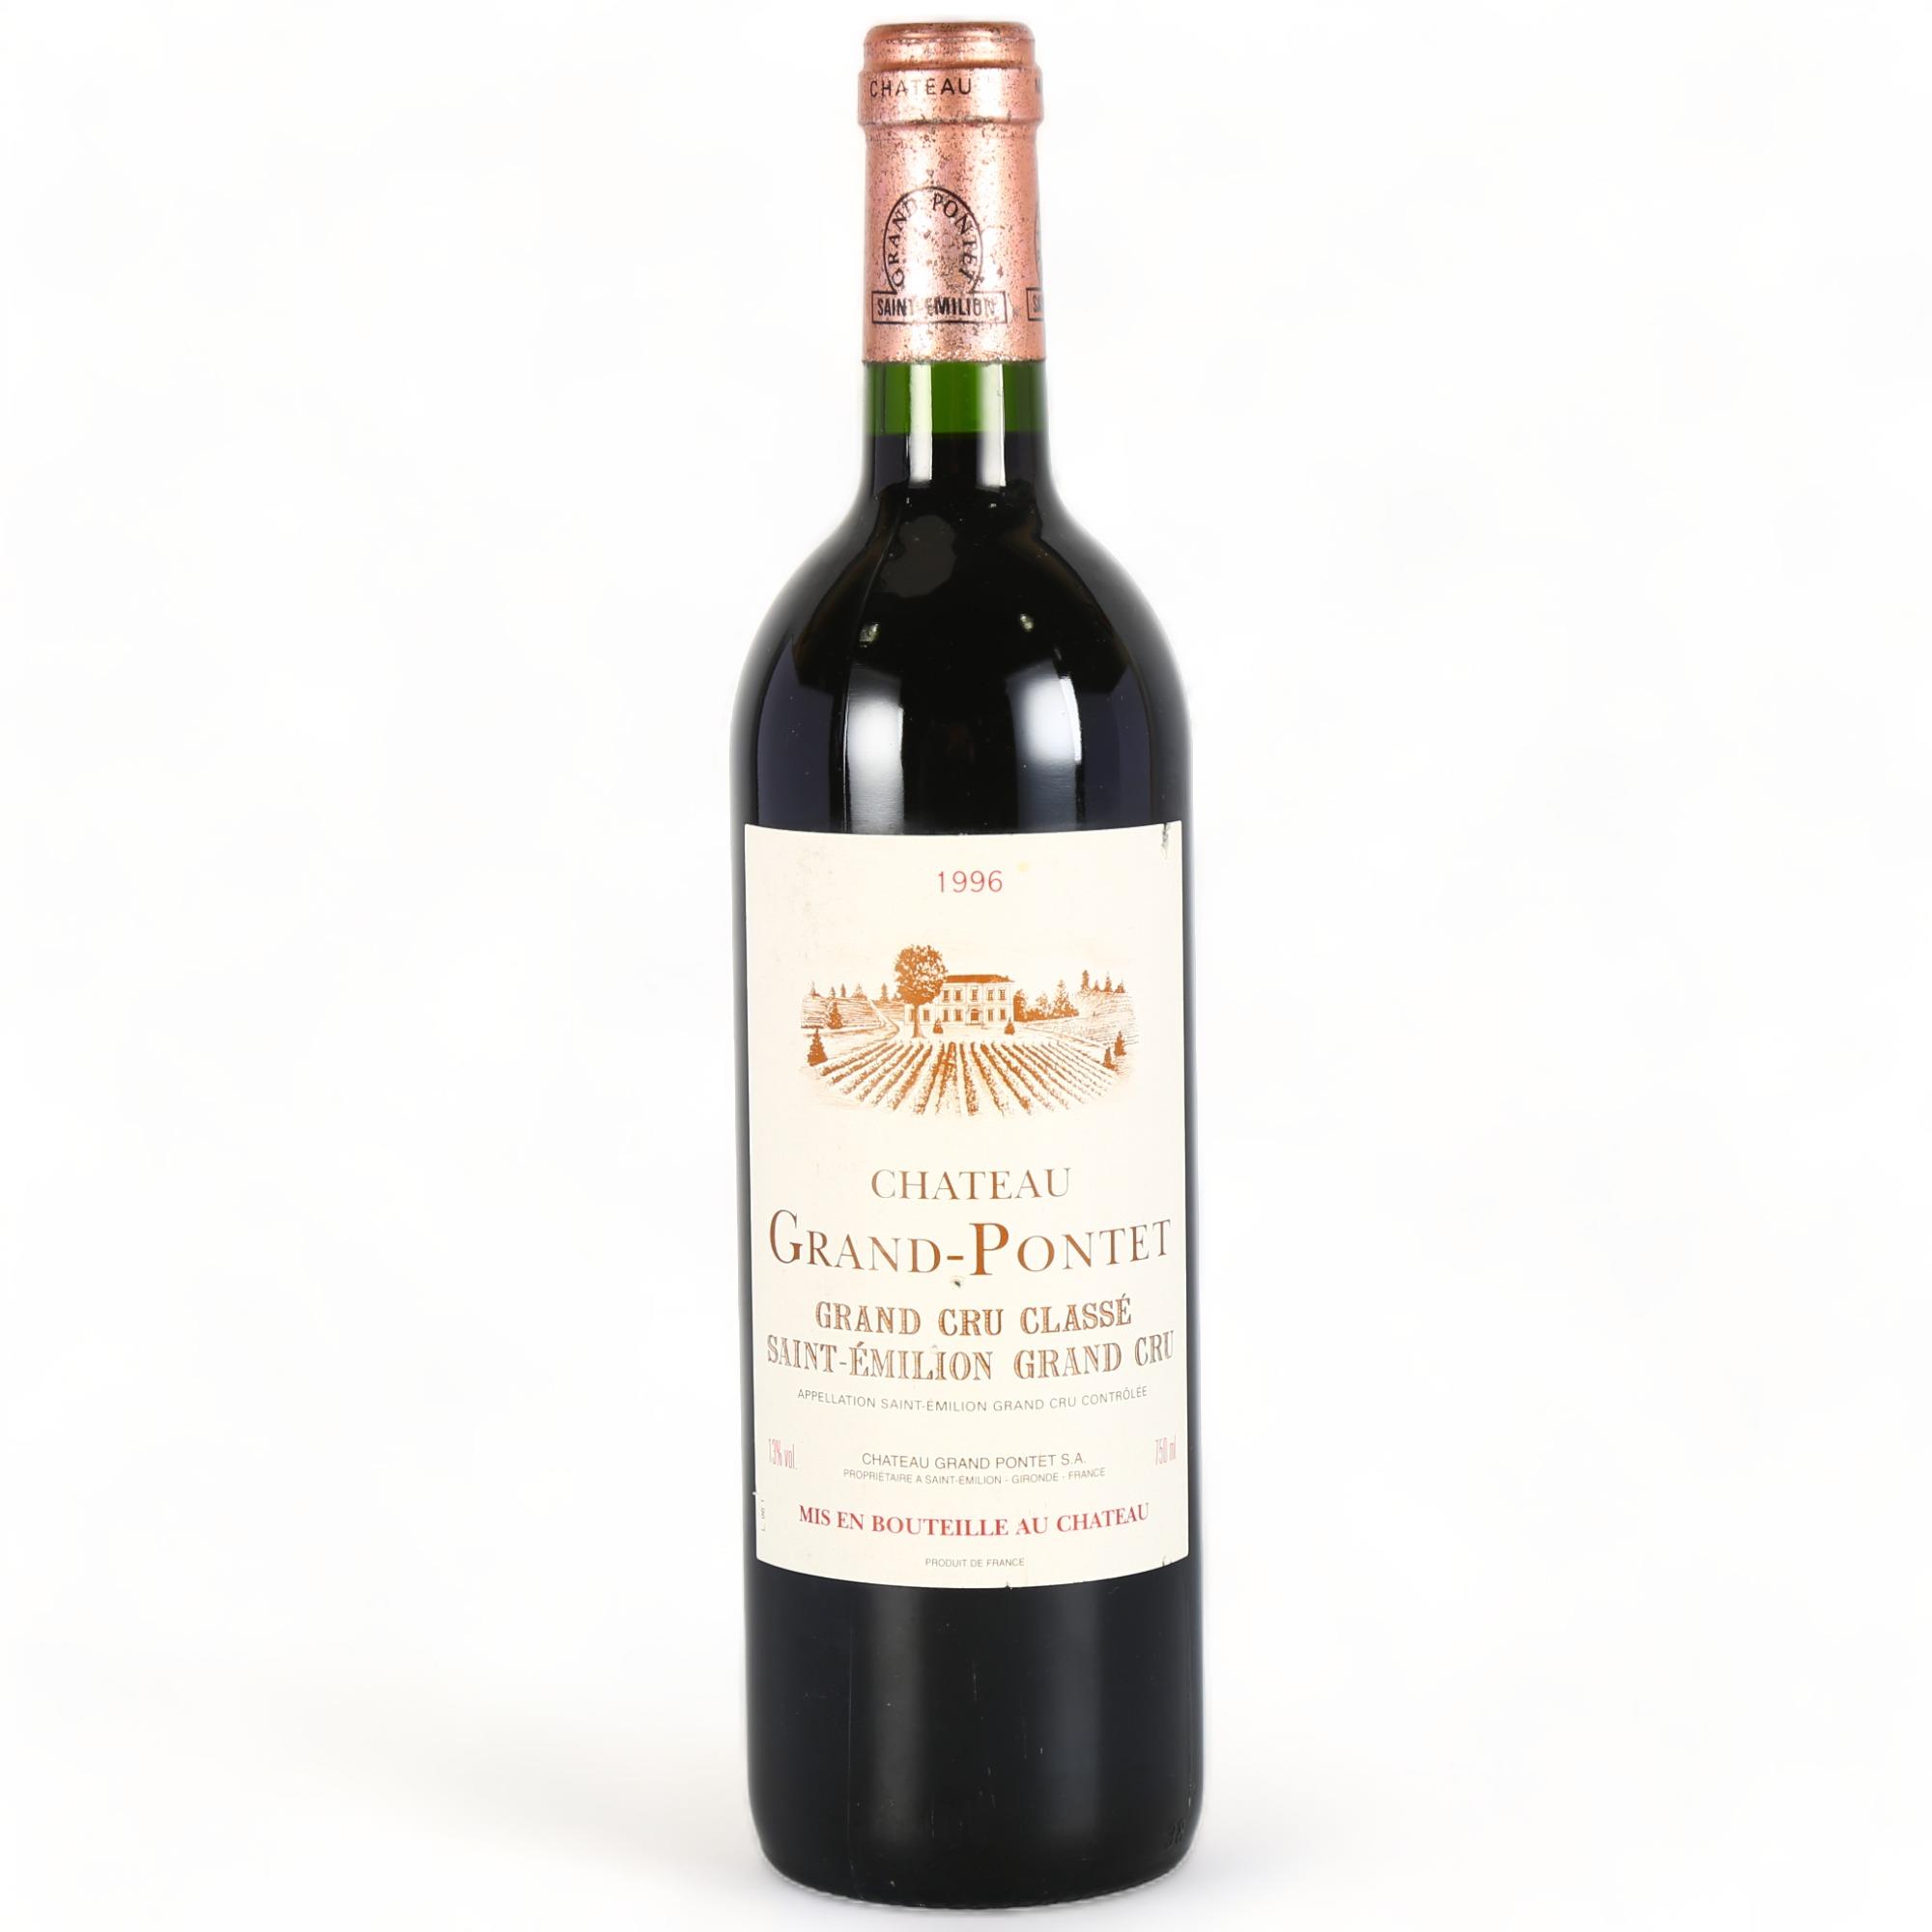 Chateau Grand-Pontet 1996, St Emilion Grand Cru x 1 bottle. Bordeaux red wine